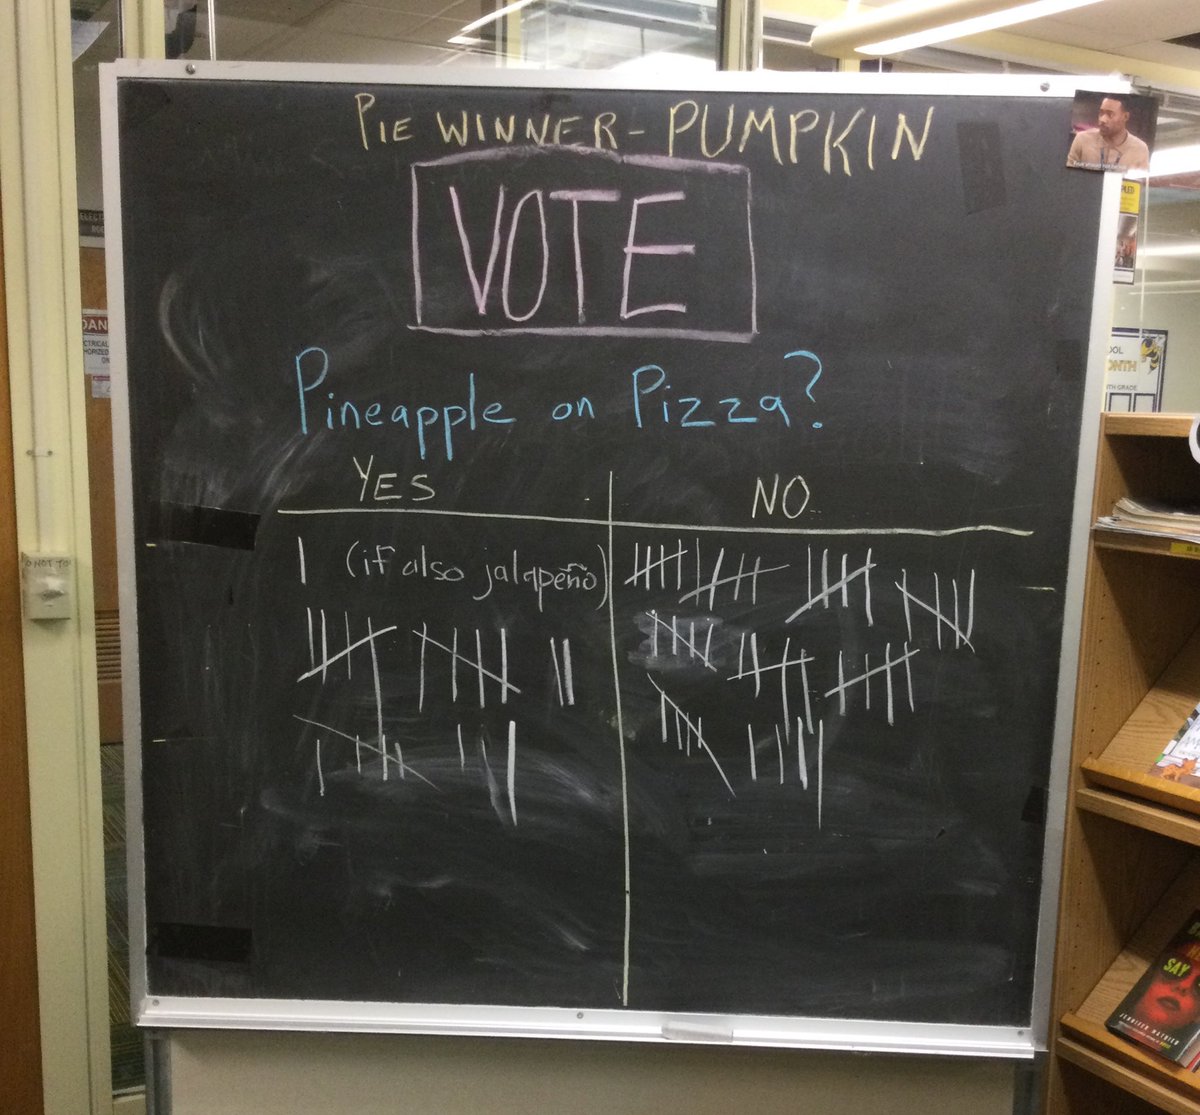 Les étudiants et le personnel de Jefferson ont des sentiments forts sur l'ananas sur la pizza. Le gagnant du sondage de la semaine dernière était la citrouille comme tarte préférée de nos gilets jaunes. @APSLibrarians @JeffersonIBMYP https://t.co/IKkWDI8ZzK